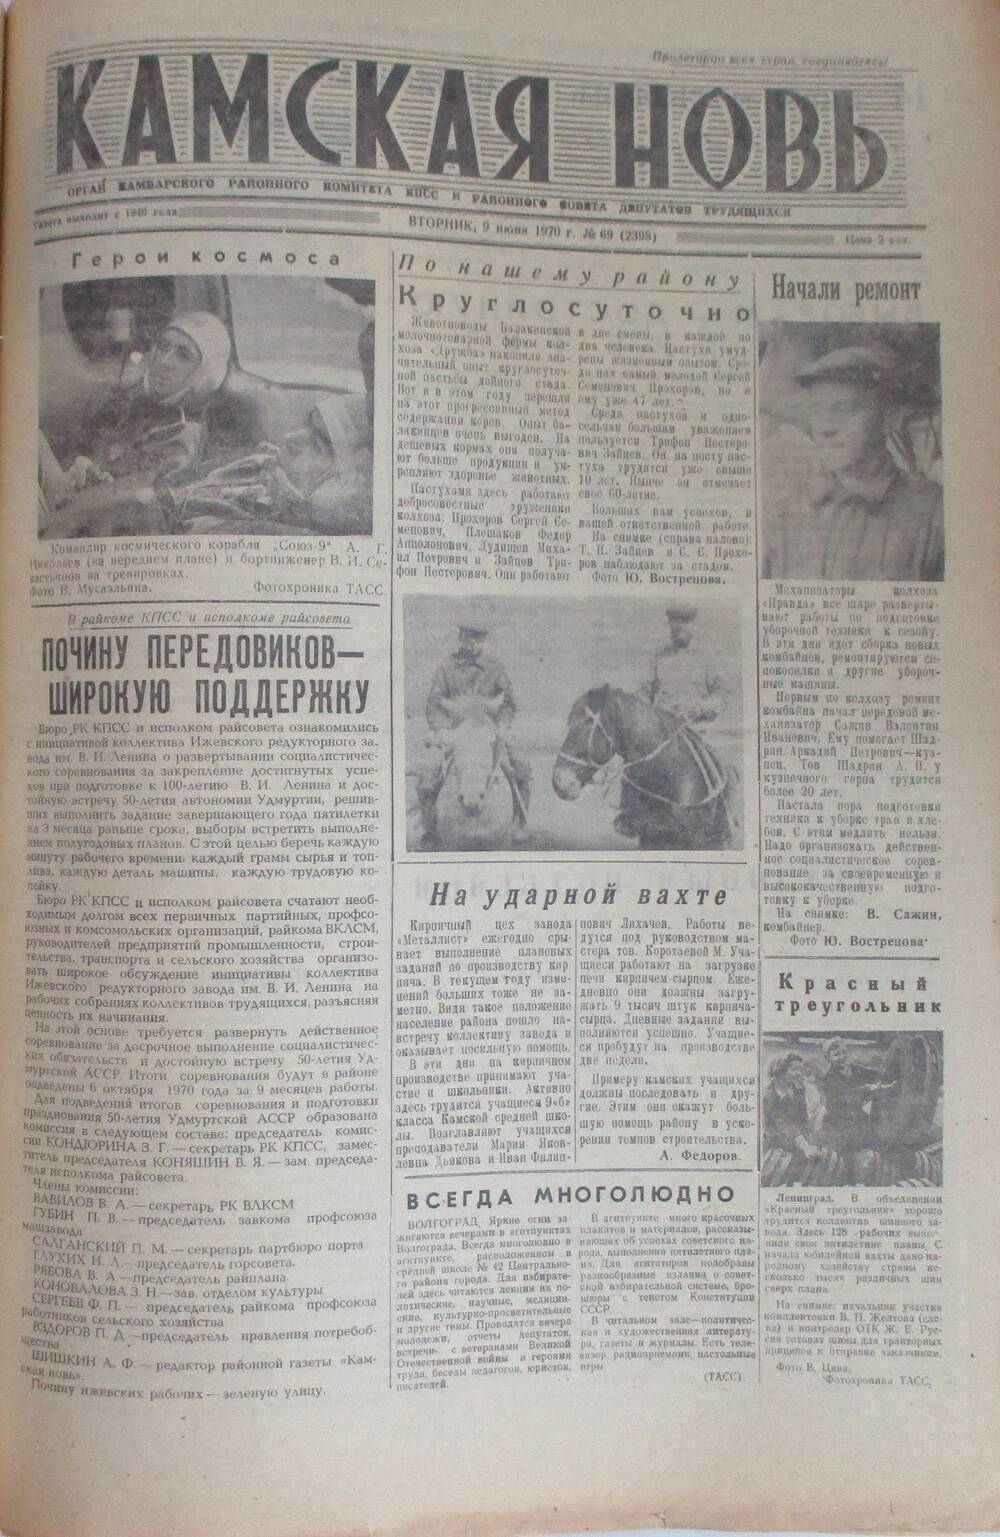 Газеты Камская новь за 1970 год. с №1 по №83., №69.